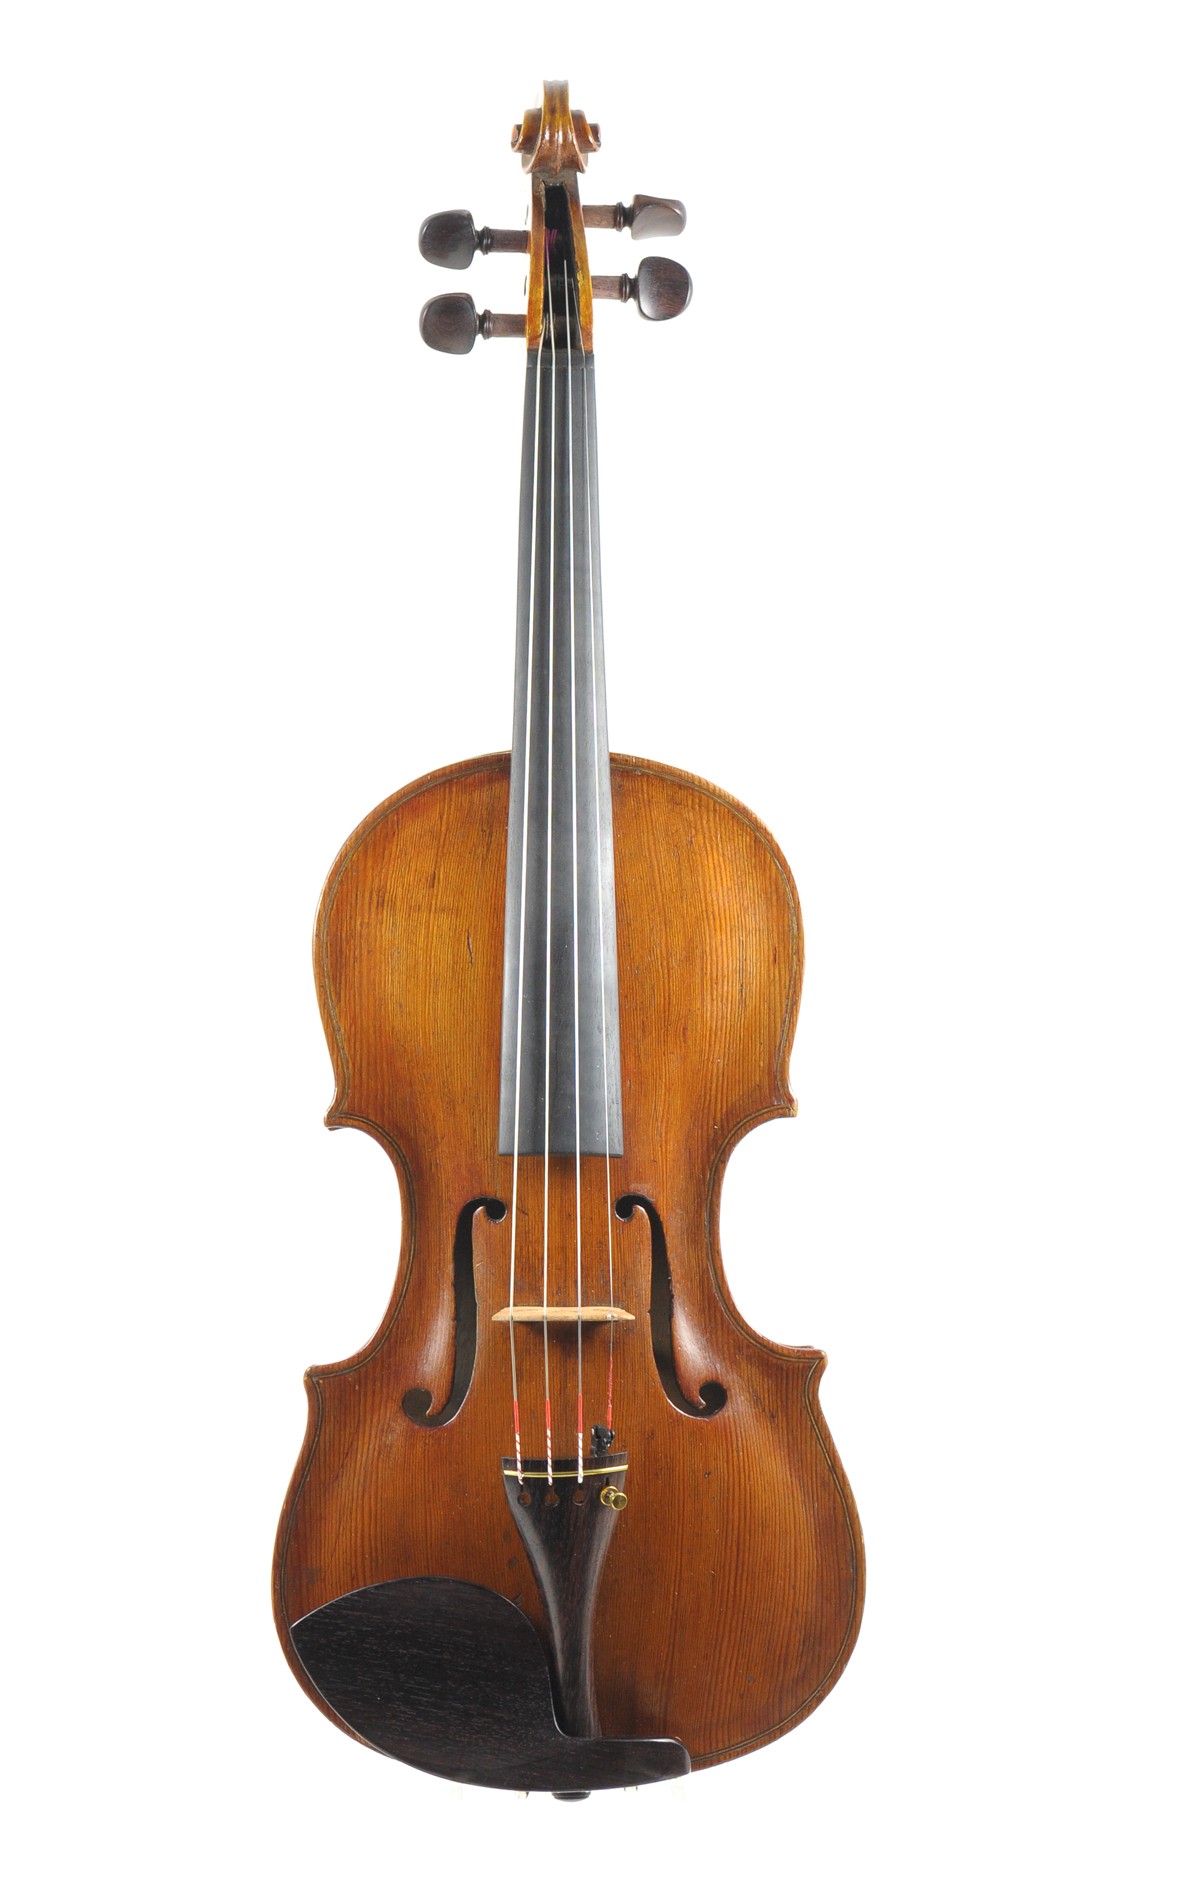 Master violin after Mariani circa 1800 - top